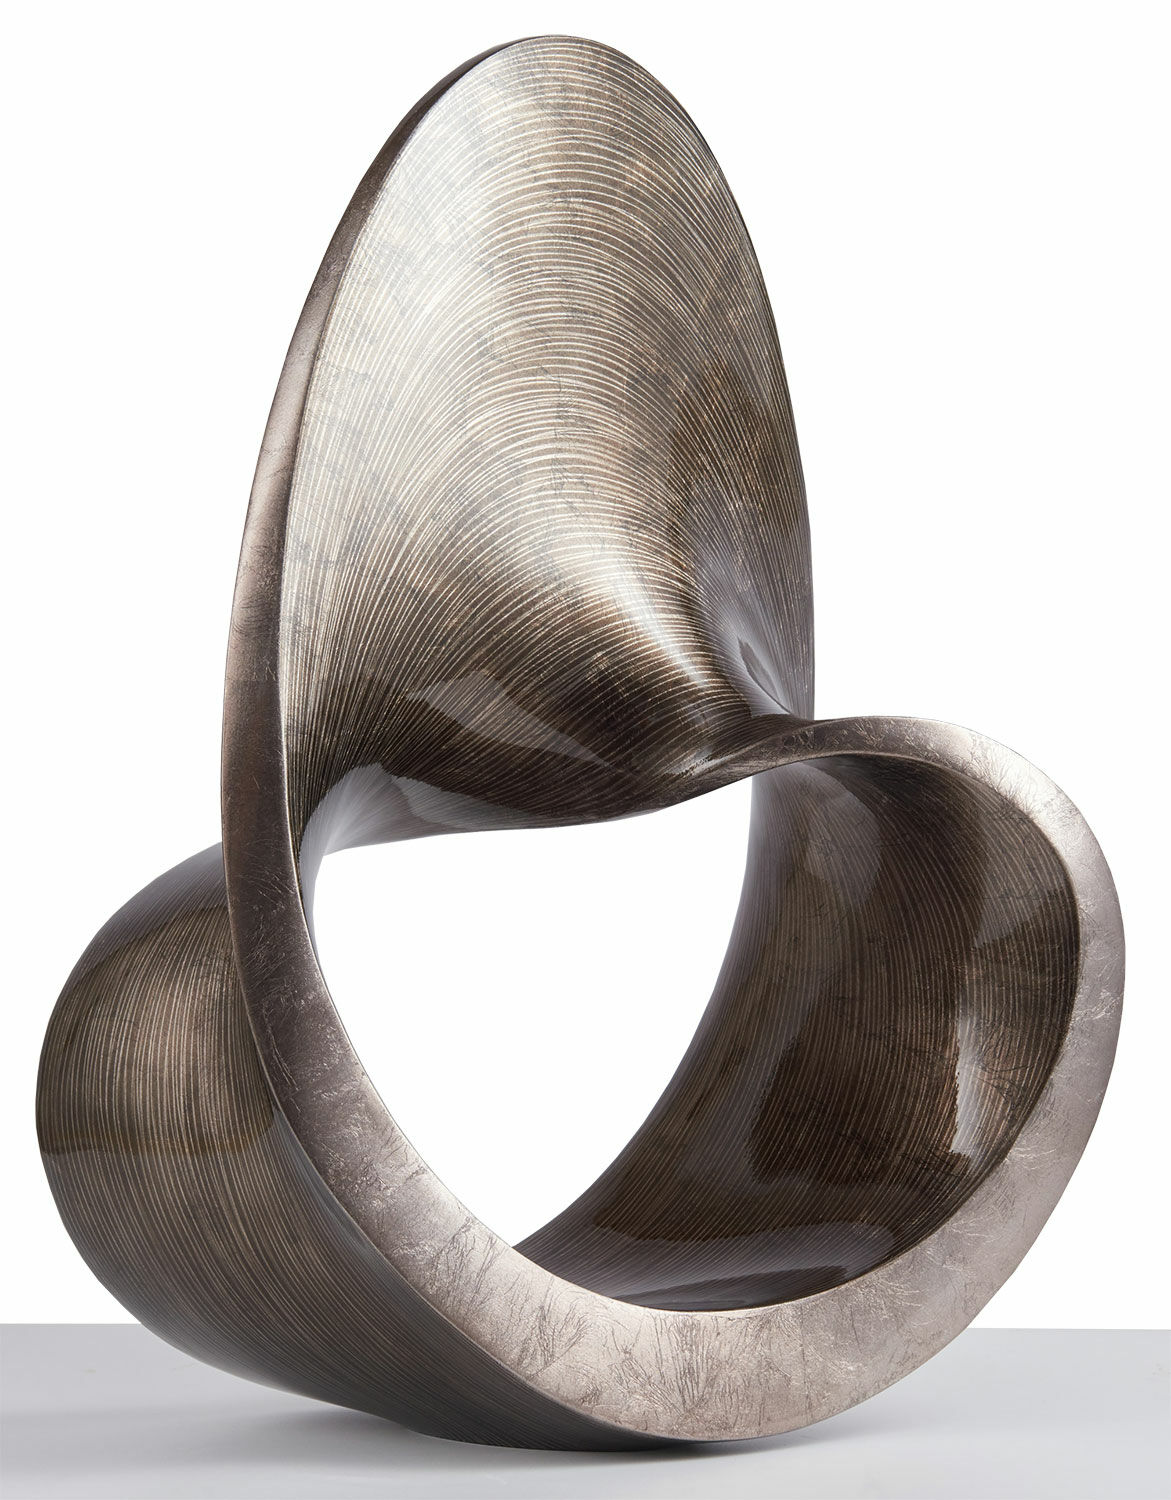 Sculpture "Spiral", cast